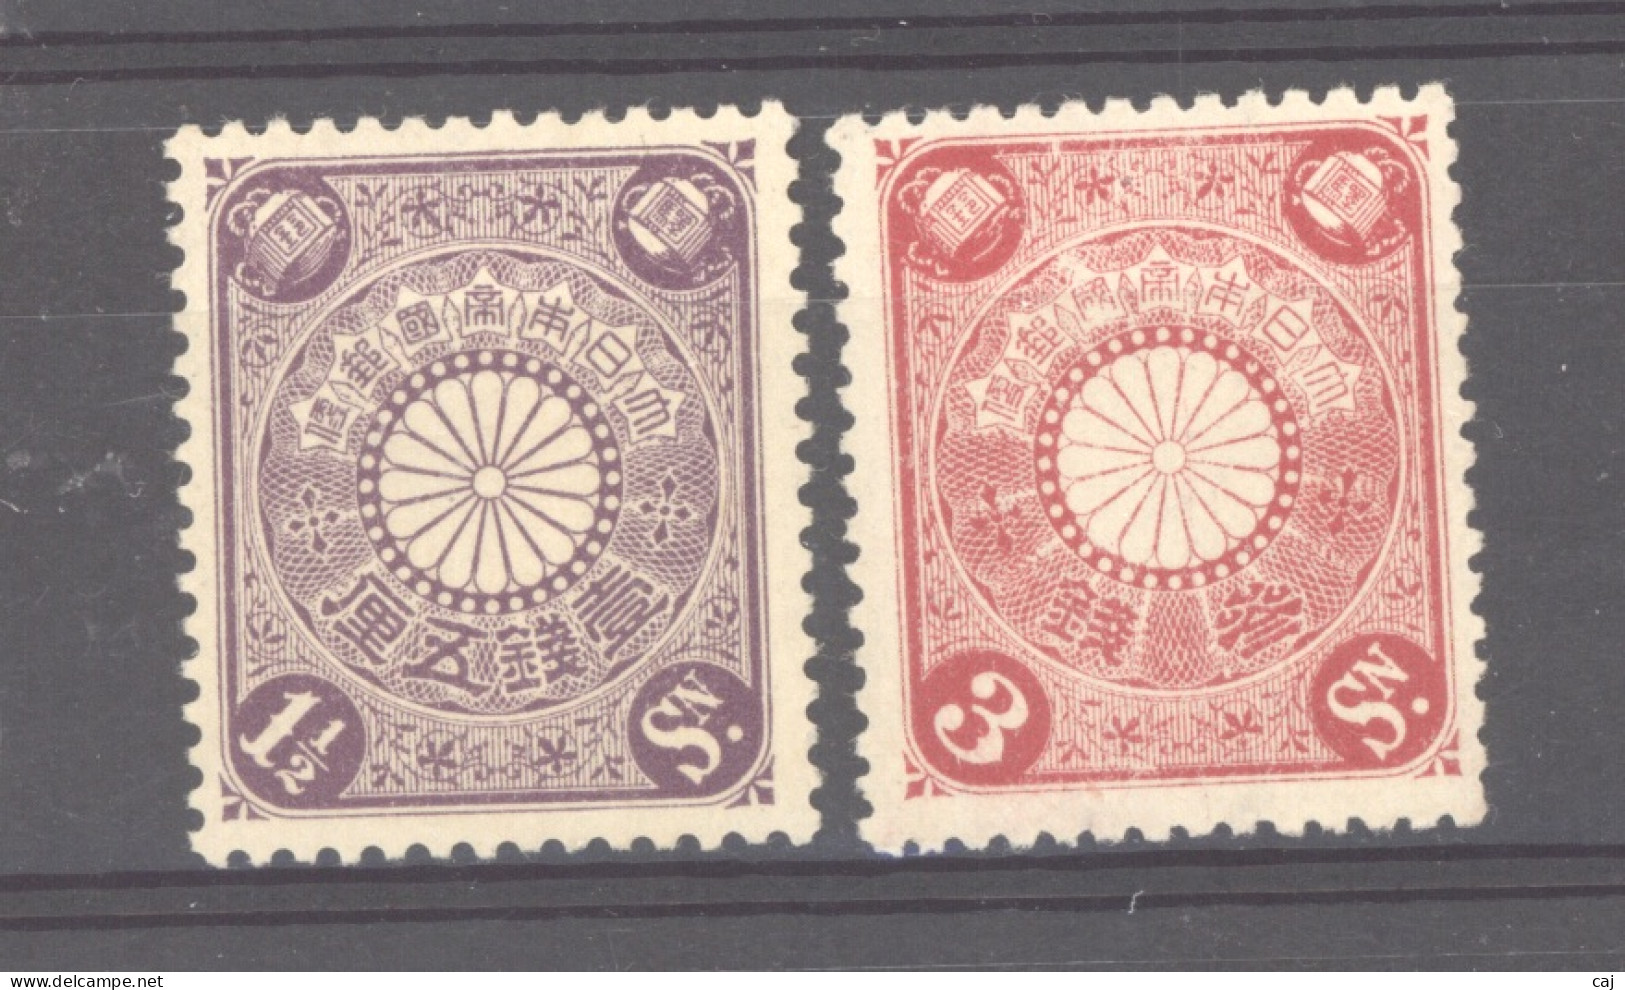 Japon  :  Yv  112-13  * - Unused Stamps